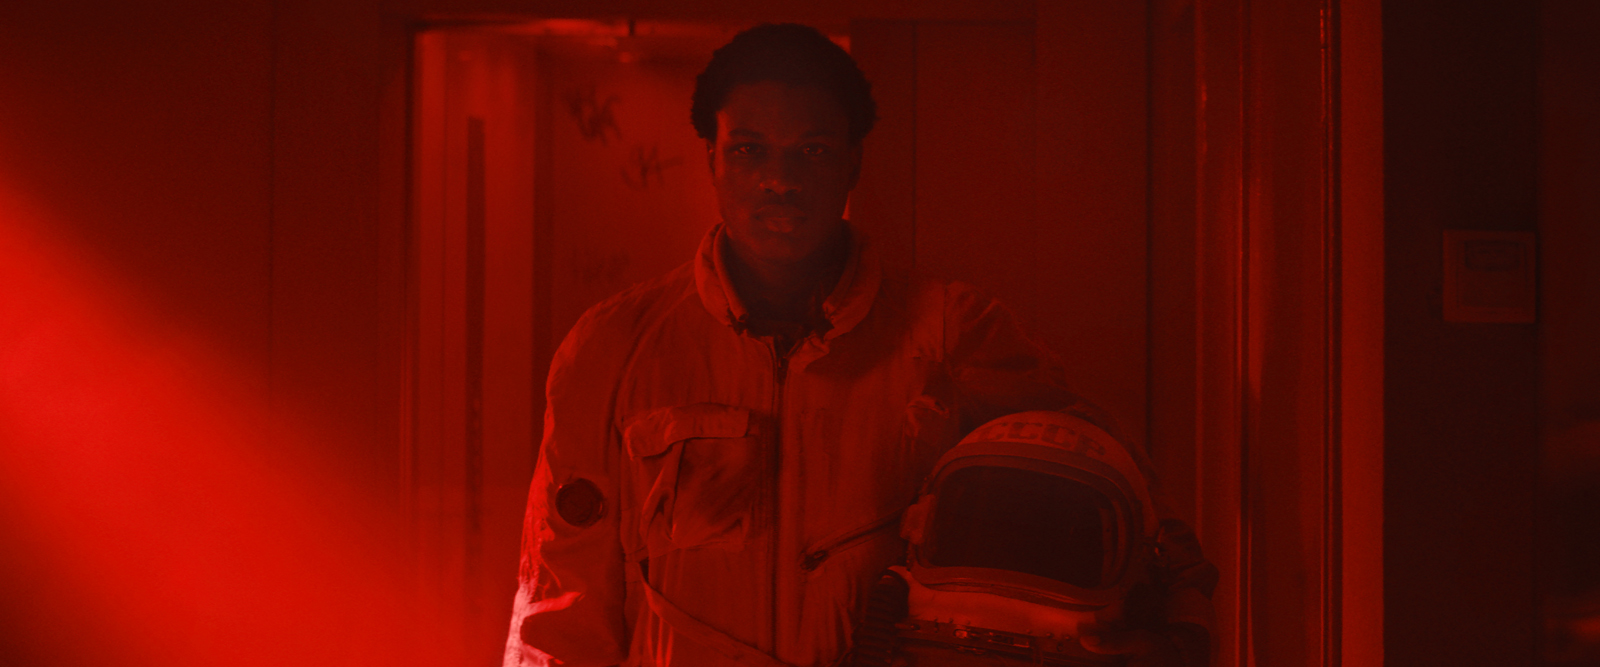 Cena do filme Edifício Gagarine. O personagem Youri, um menino de 16 anos negro de pele escura, está vestido com uma roupa de astronauta vintage. Ele segura o capacete da roupa nos braços. Ele está em um corredor, caminhando em direção a câmera. A iluminação da cena é toda em vermelho. 